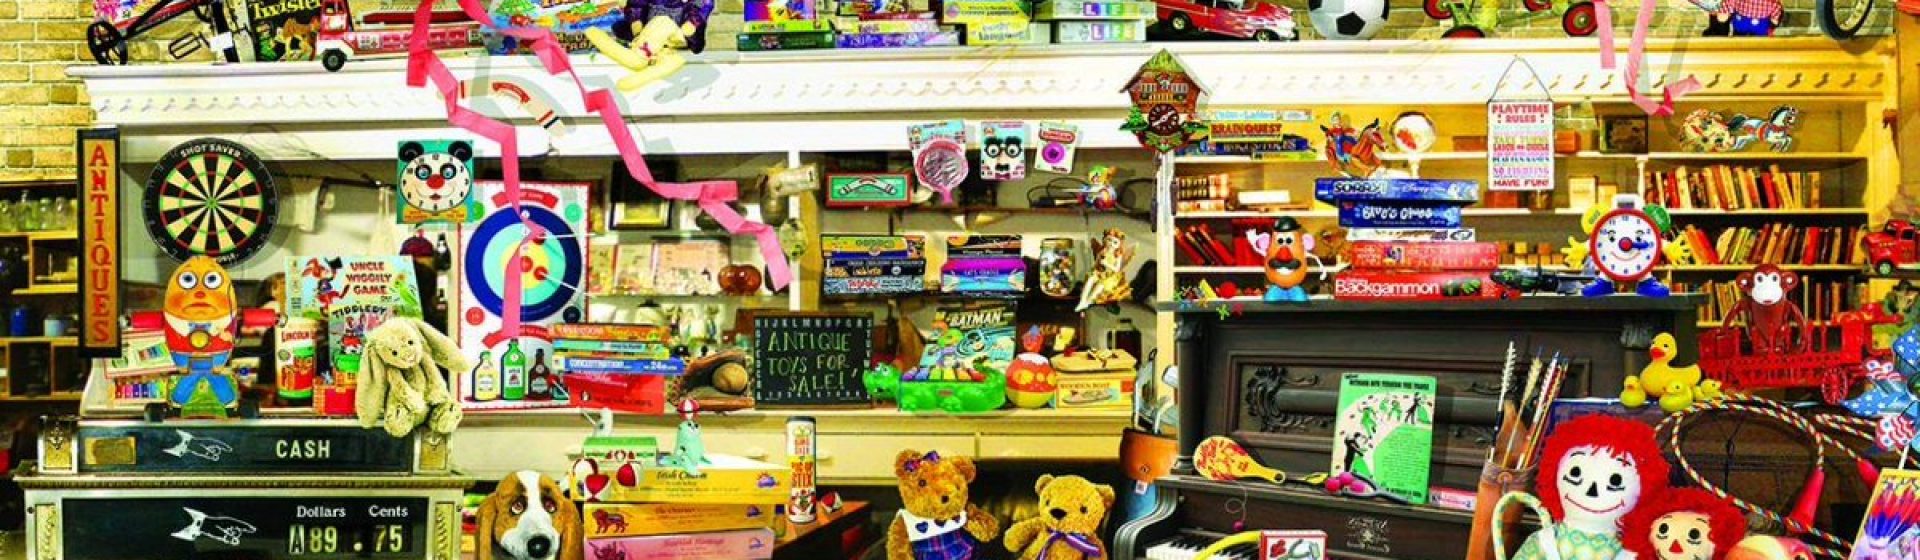 Service de magasin de jouet à Asnières sur Seine – Doniol-valcroze Laurent